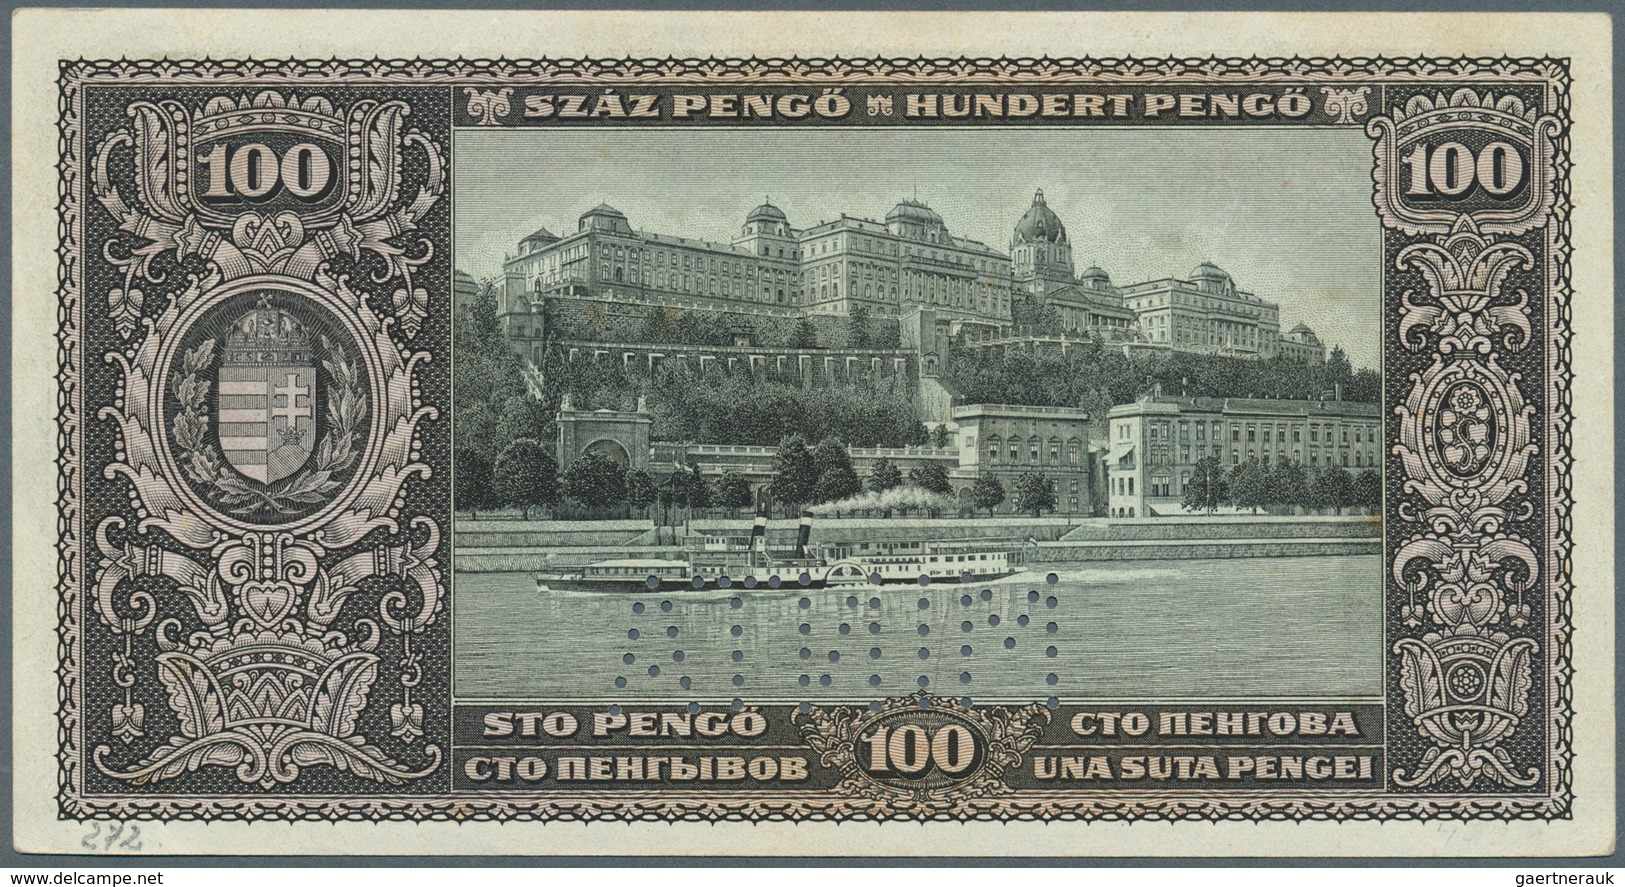 01695 Hungary / Ungarn: Magyar Nemzeti Bank, 100 Pengö 1926 MINTA (Specimen), P.93s, Vertical Fold At Cent - Hungría